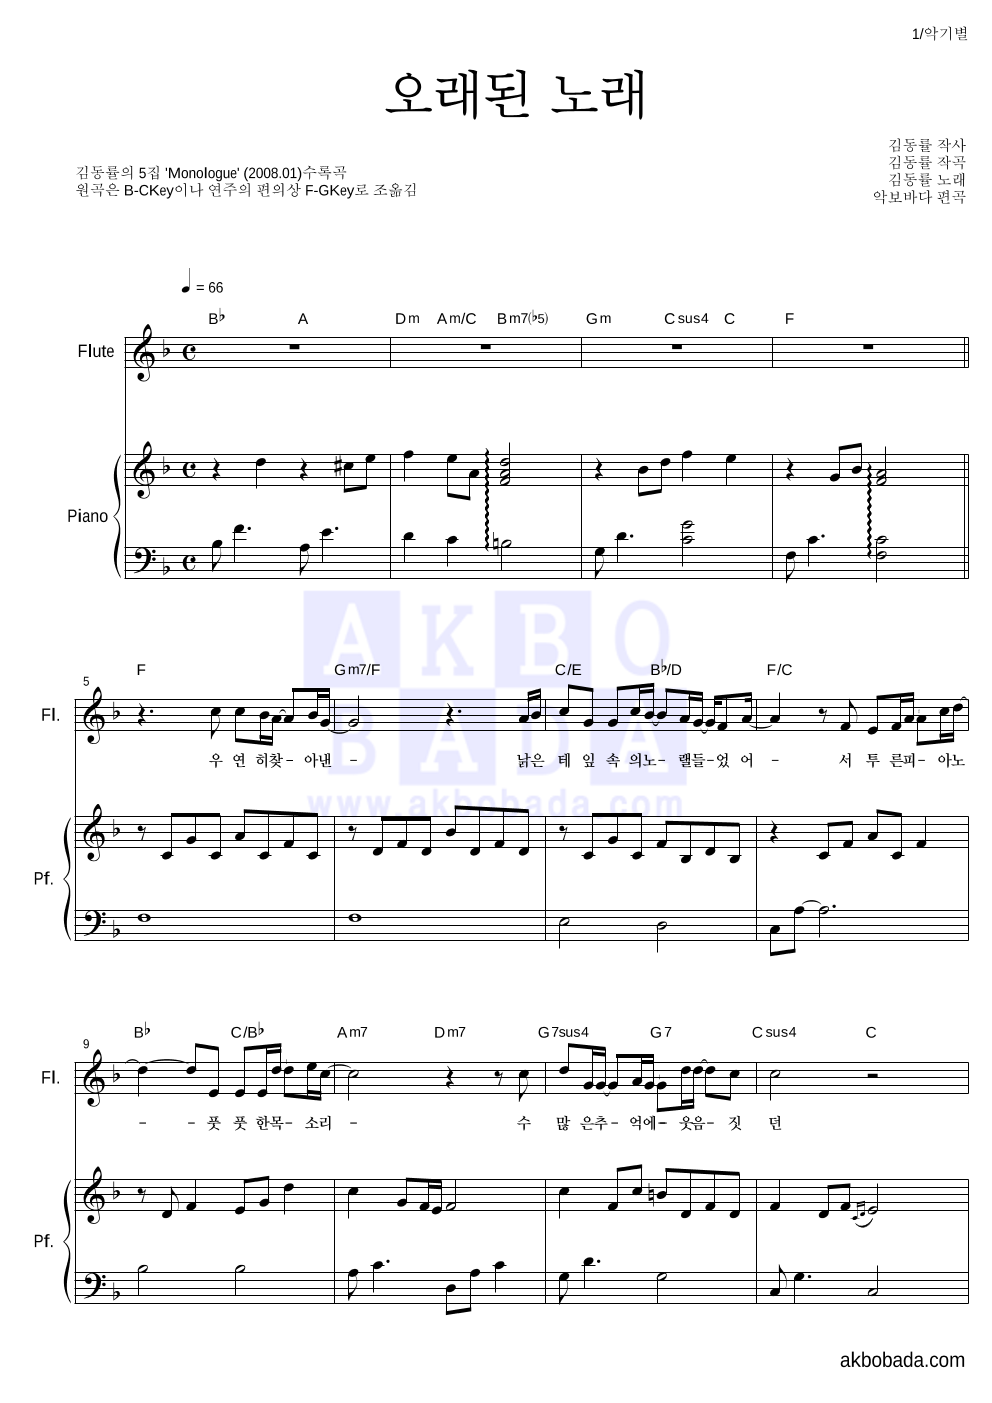 김동률 - 오래된 노래 플룻&피아노 악보 